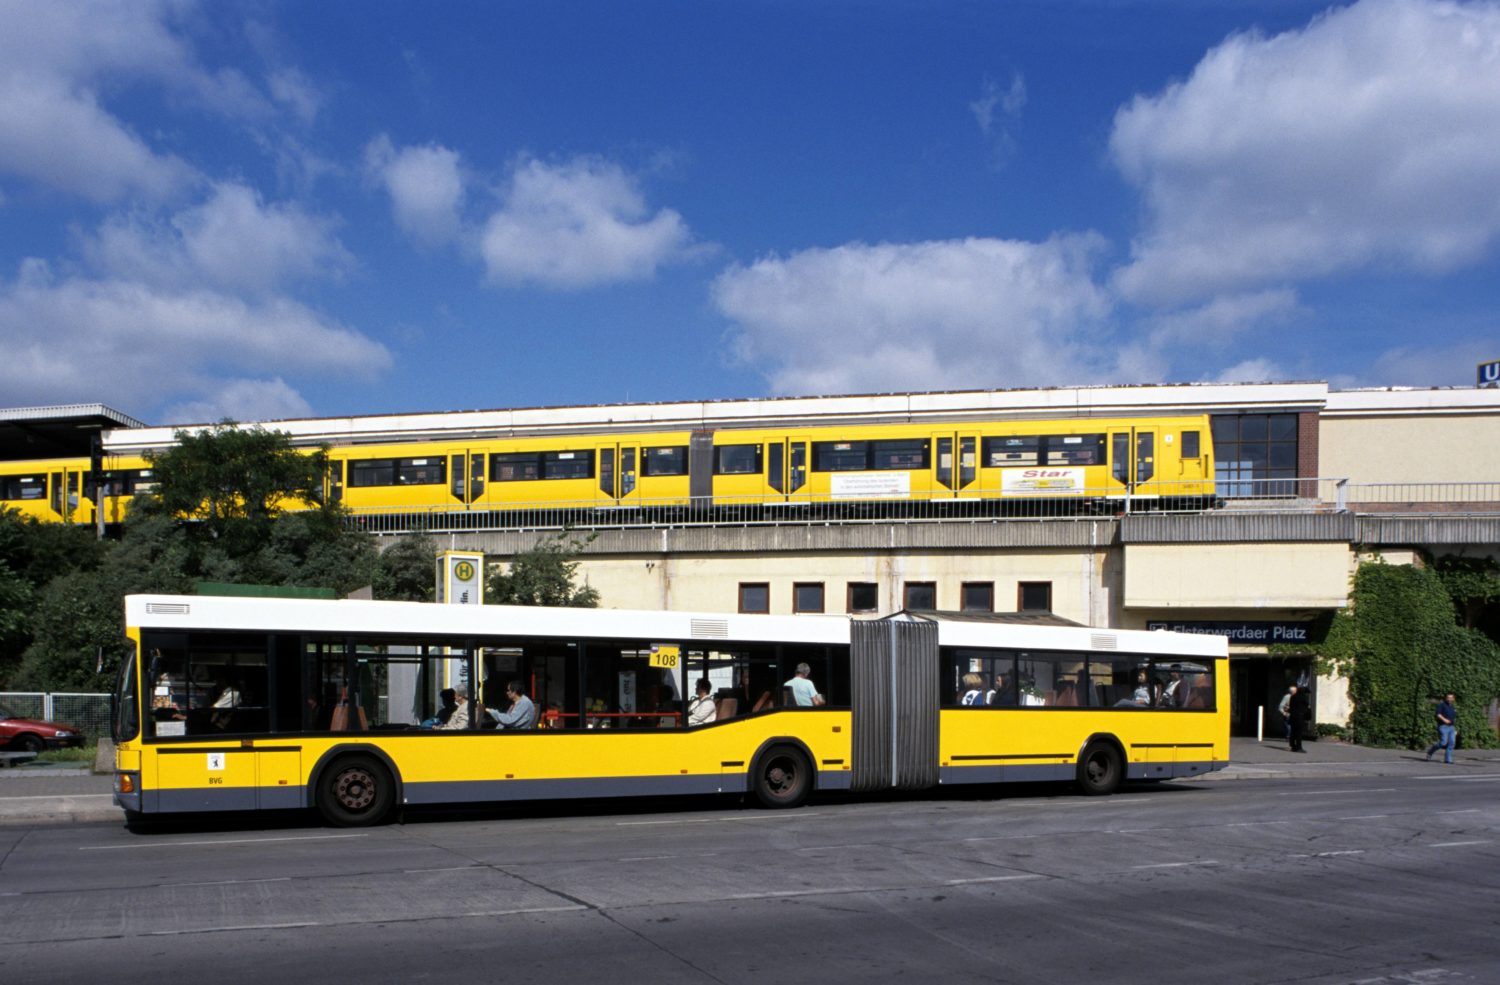 Vom U-Bahnhof Elsterwerdaer Platz kommt ihr blitzschnell zum Schloss Biesdorf – oder steigt in den Bus um. Foto: Imago Images/F. Berger